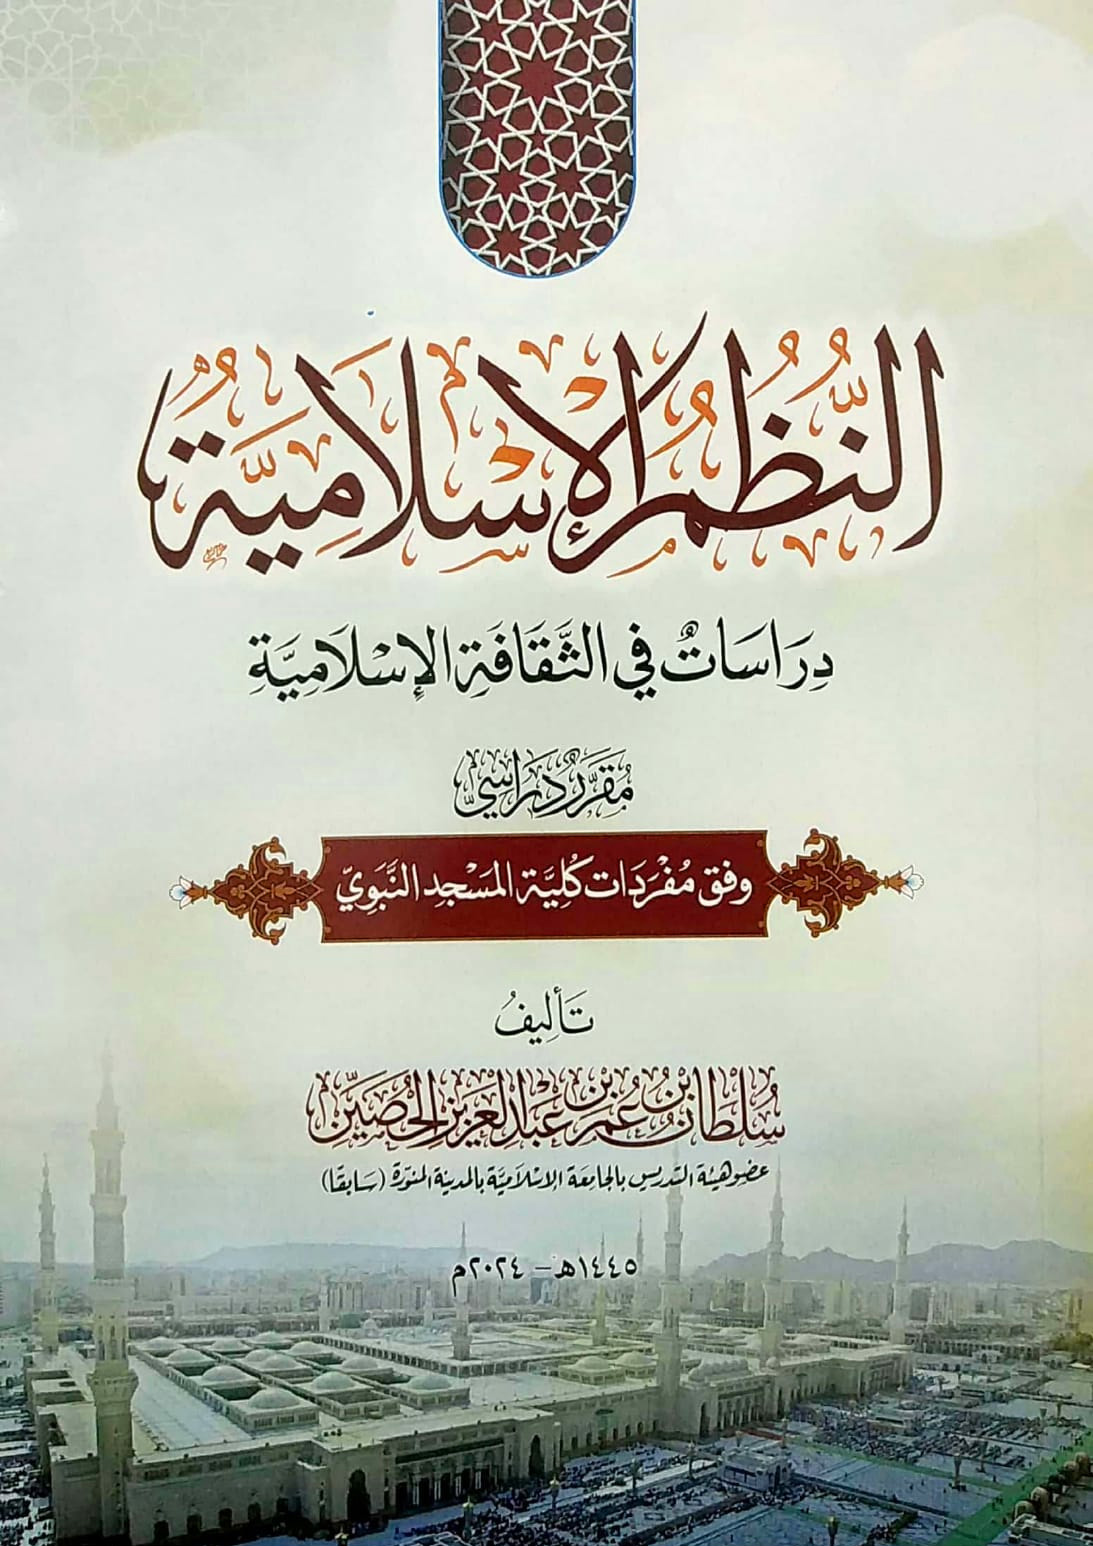 النظم الإسلامية دراسات في الثقافة الإسلامية مقرر دراسي وفق مفردات كلية المسجد النبوي